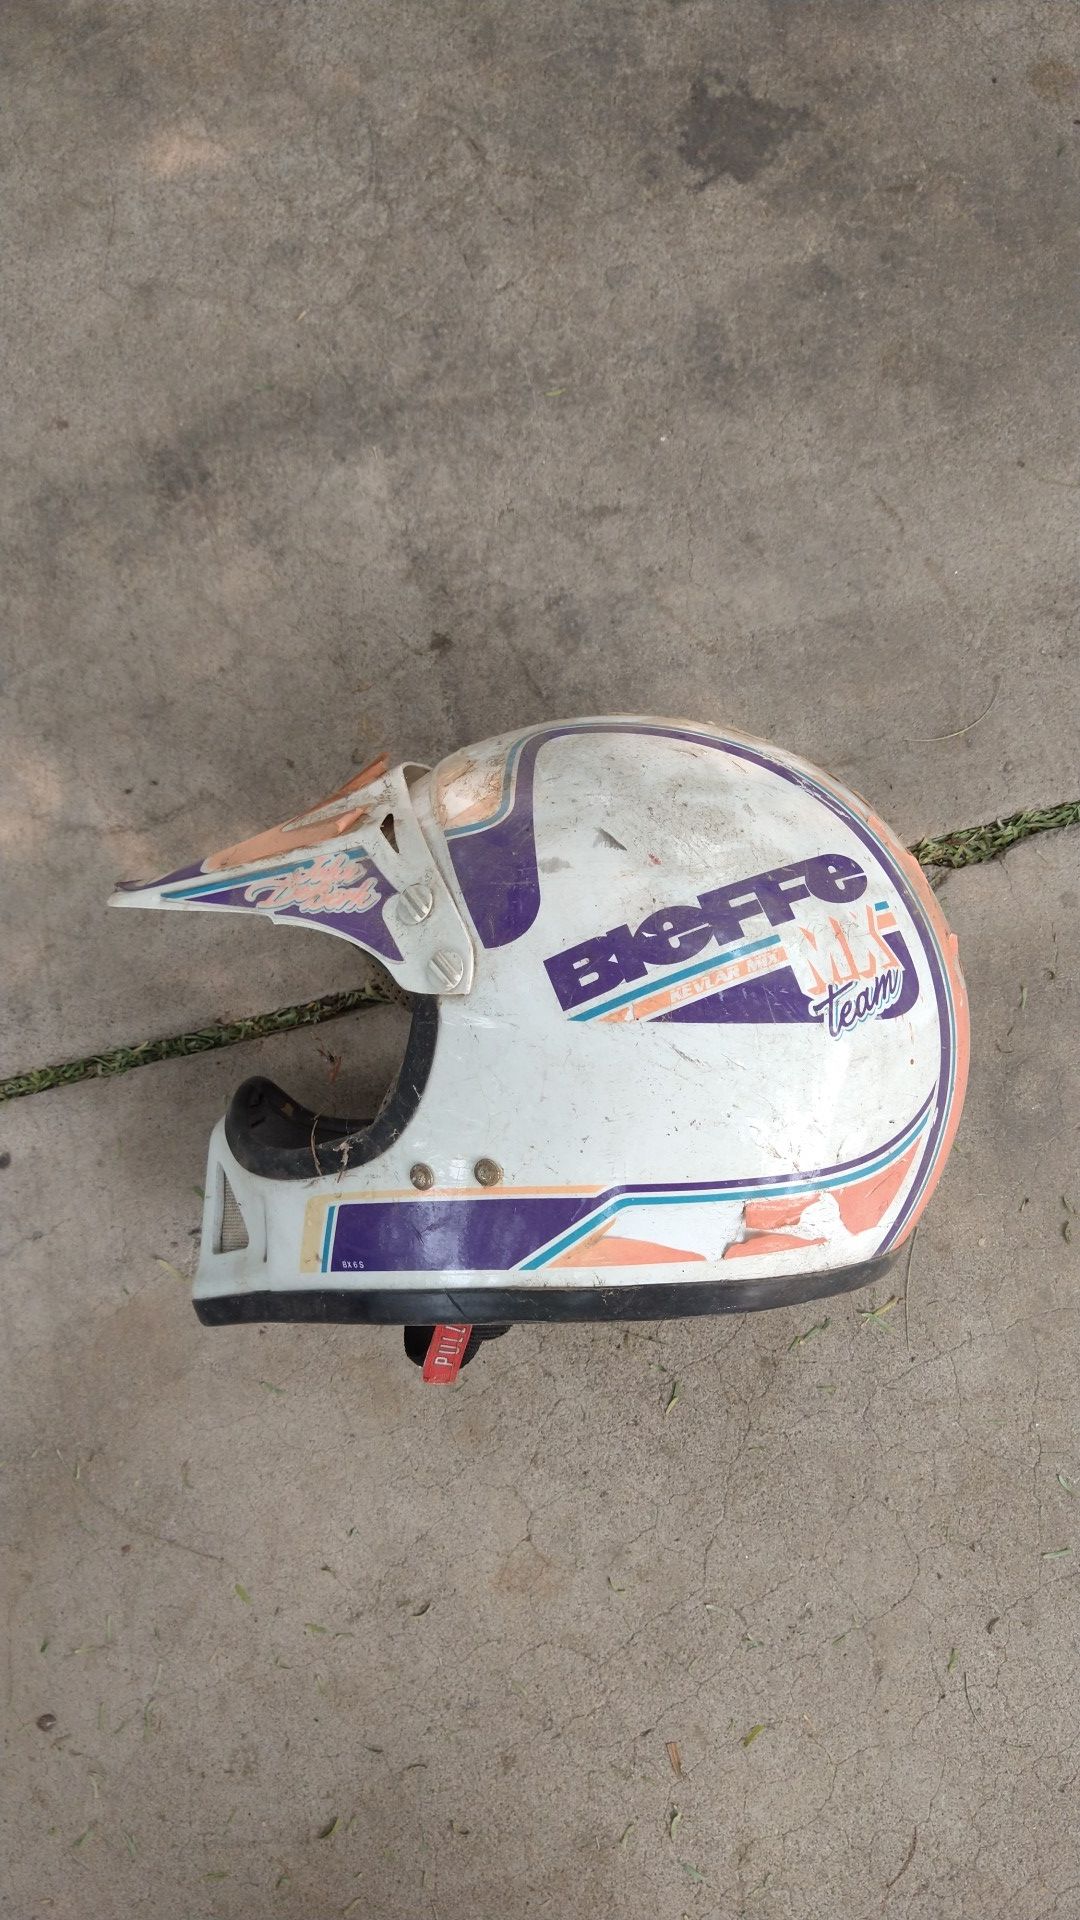 Bieffe used motorcycle helmet